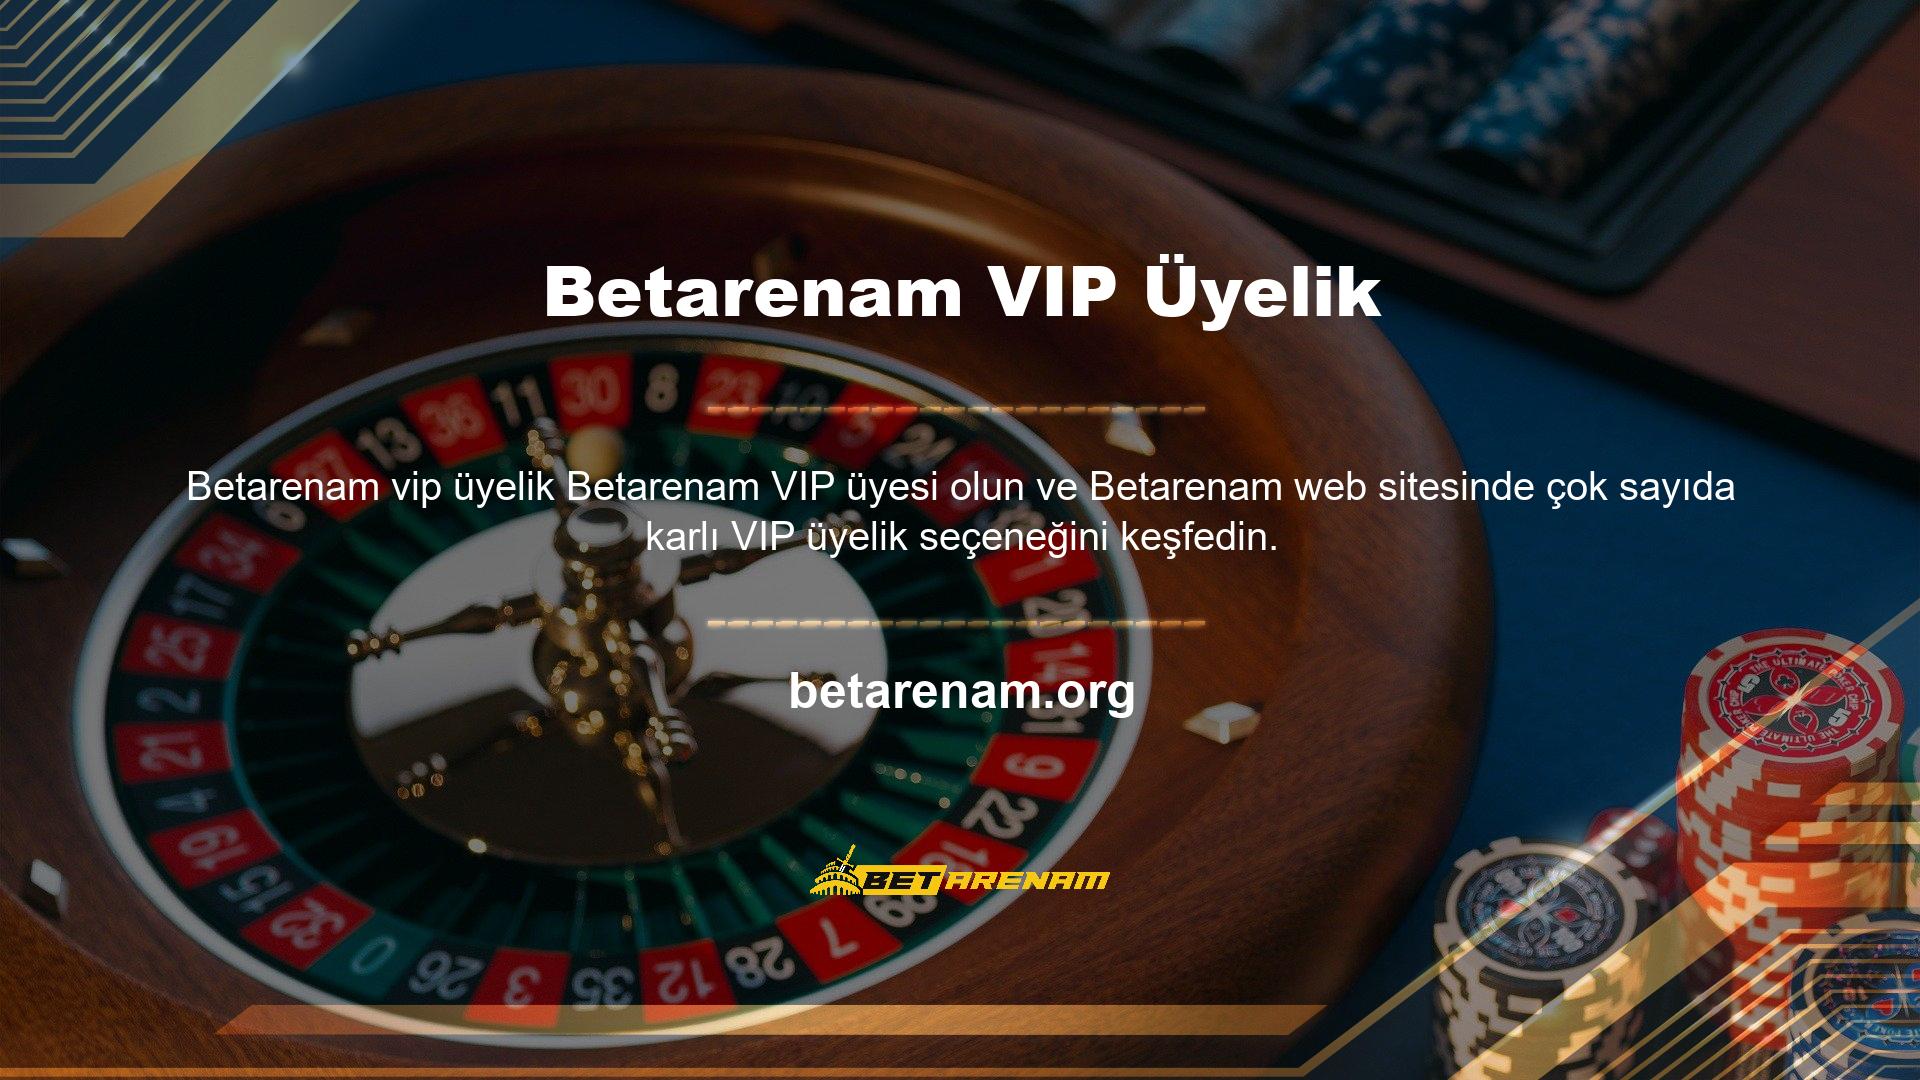 Betarenam VIP üyeleri, siteye daha hızlı para yatırma ve çekme avantajına sahiptir